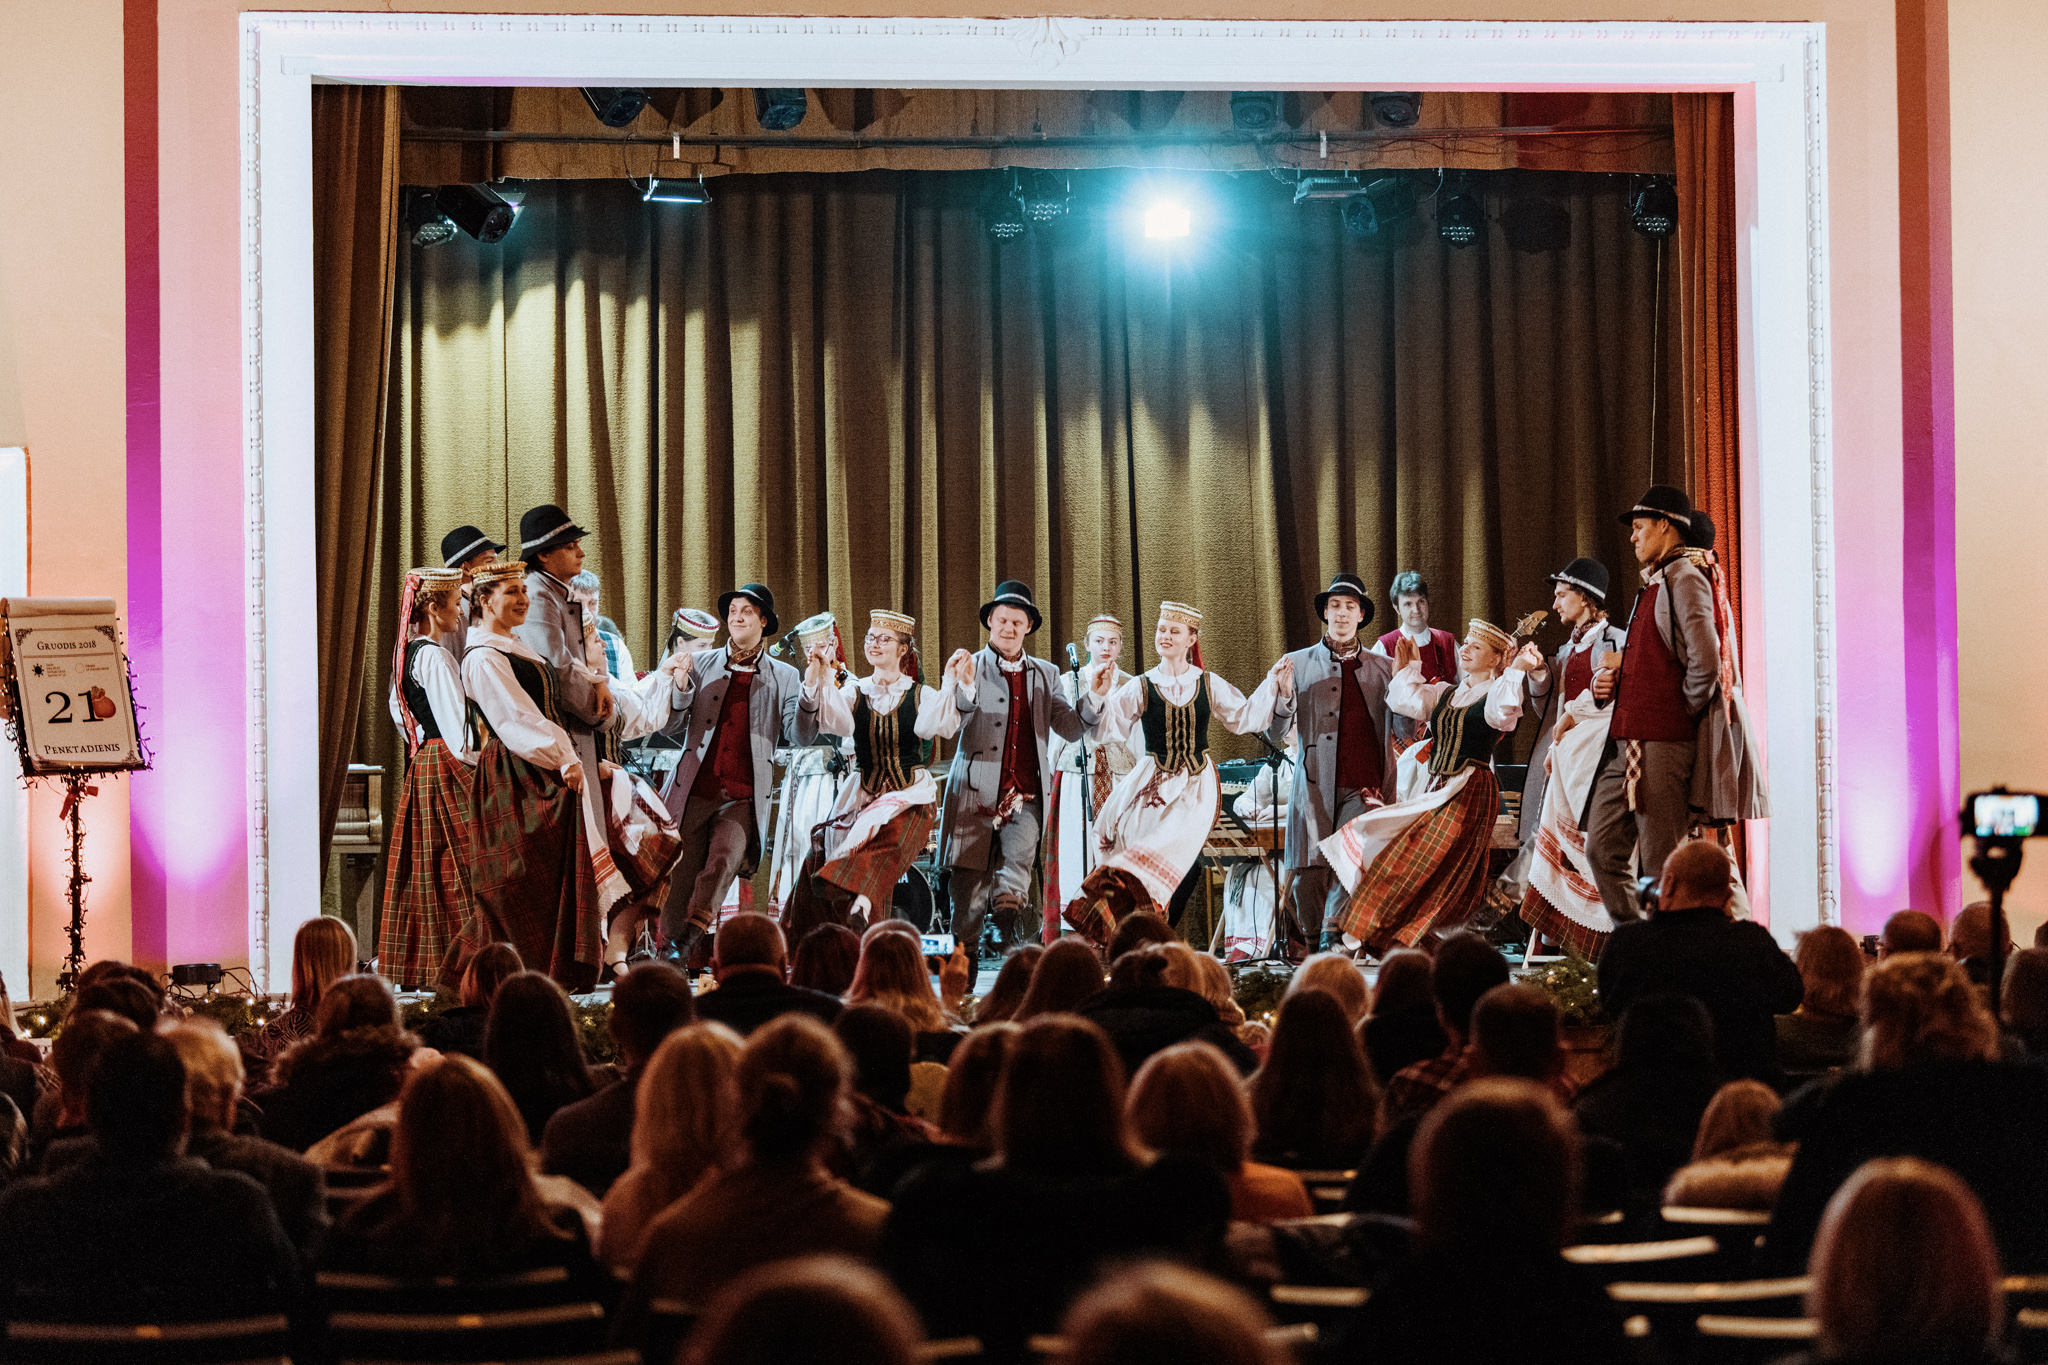 Vilniaus universiteto folkloro ansamblis Jaunimėlis | Daugyvenės kultūros istorijos muziejaus-draustinio nuotr.